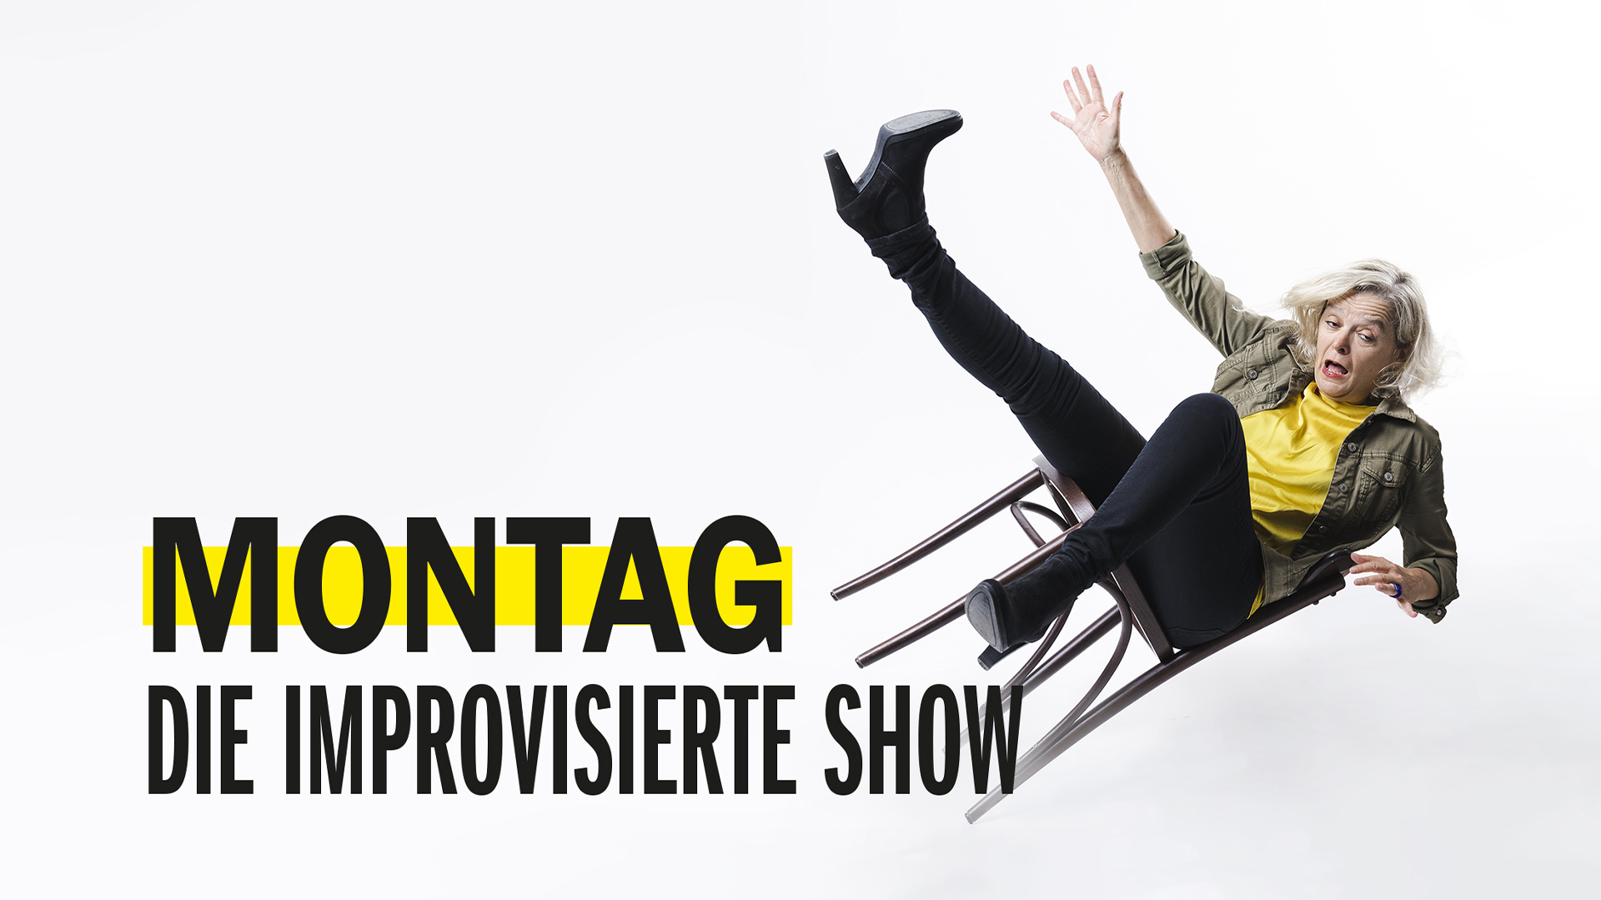 Montag - Die improvisierte Show